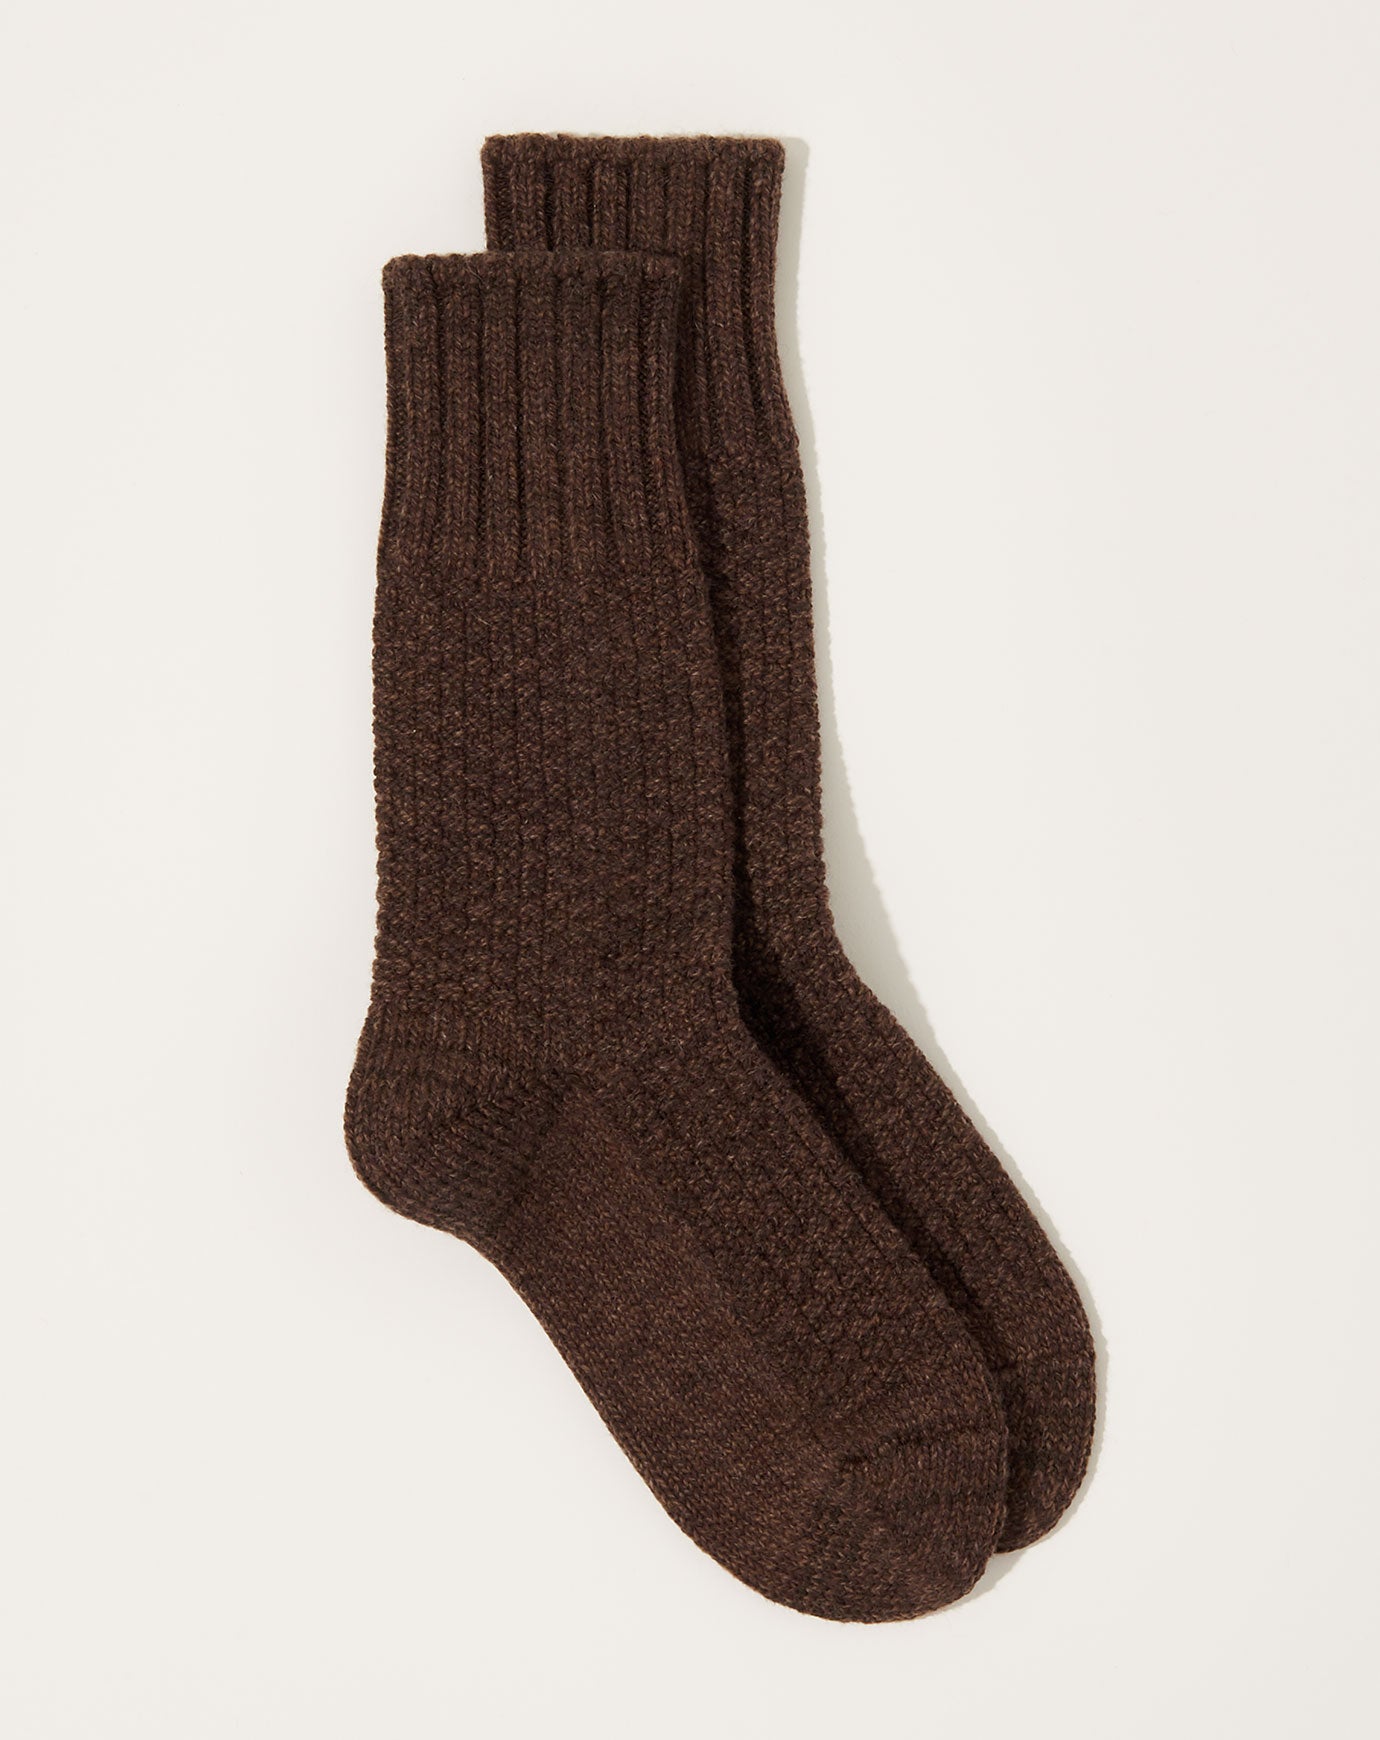 Nishiguchi Kutsushita Wool Cotton Boot Socks in Mocha Brown